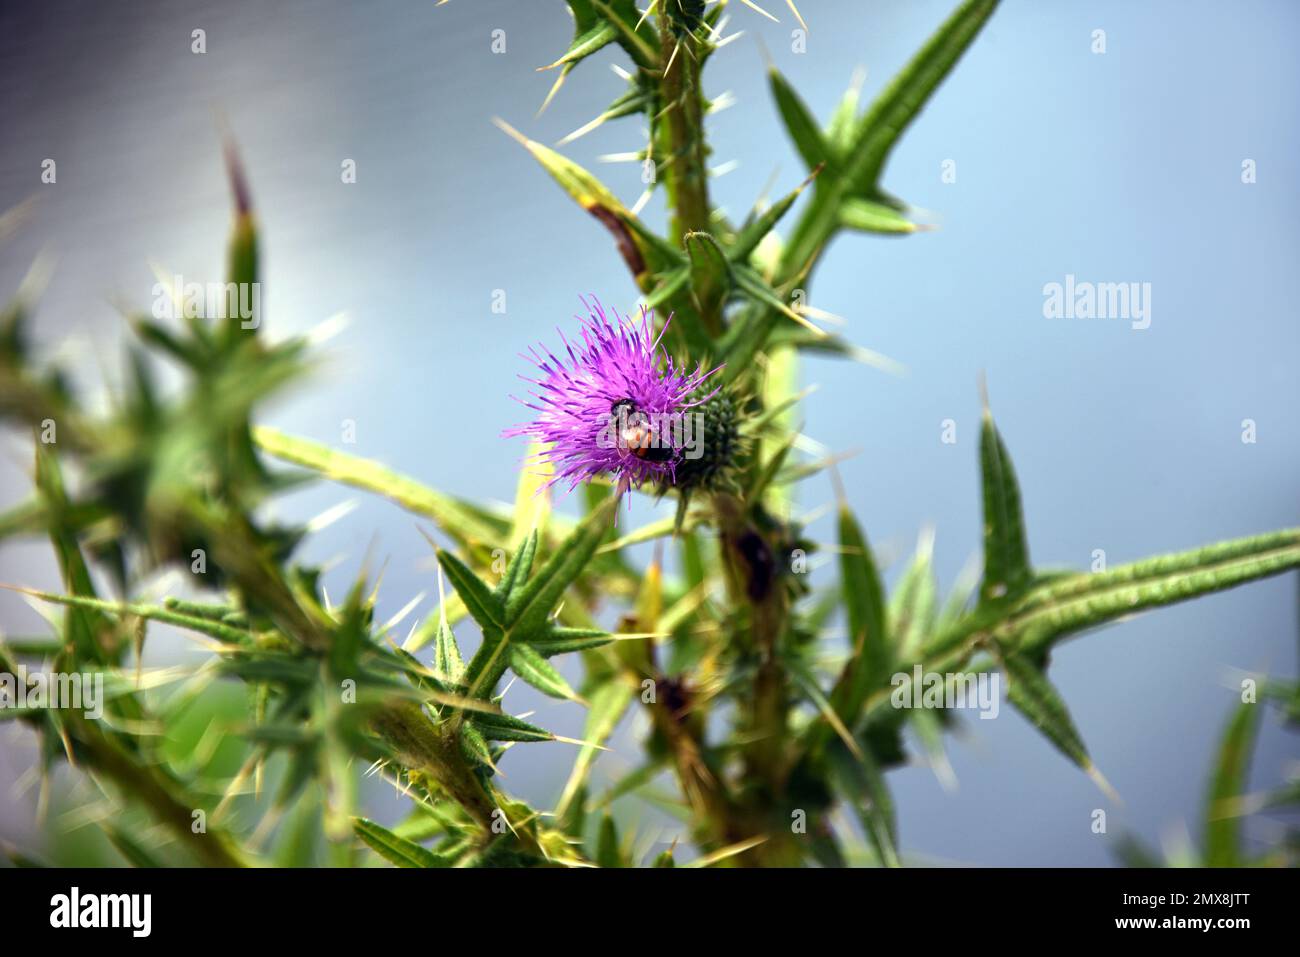 La imagen de primer plano muestra una pequeña abeja visitando una flor de cardo púrpura. Foto de stock